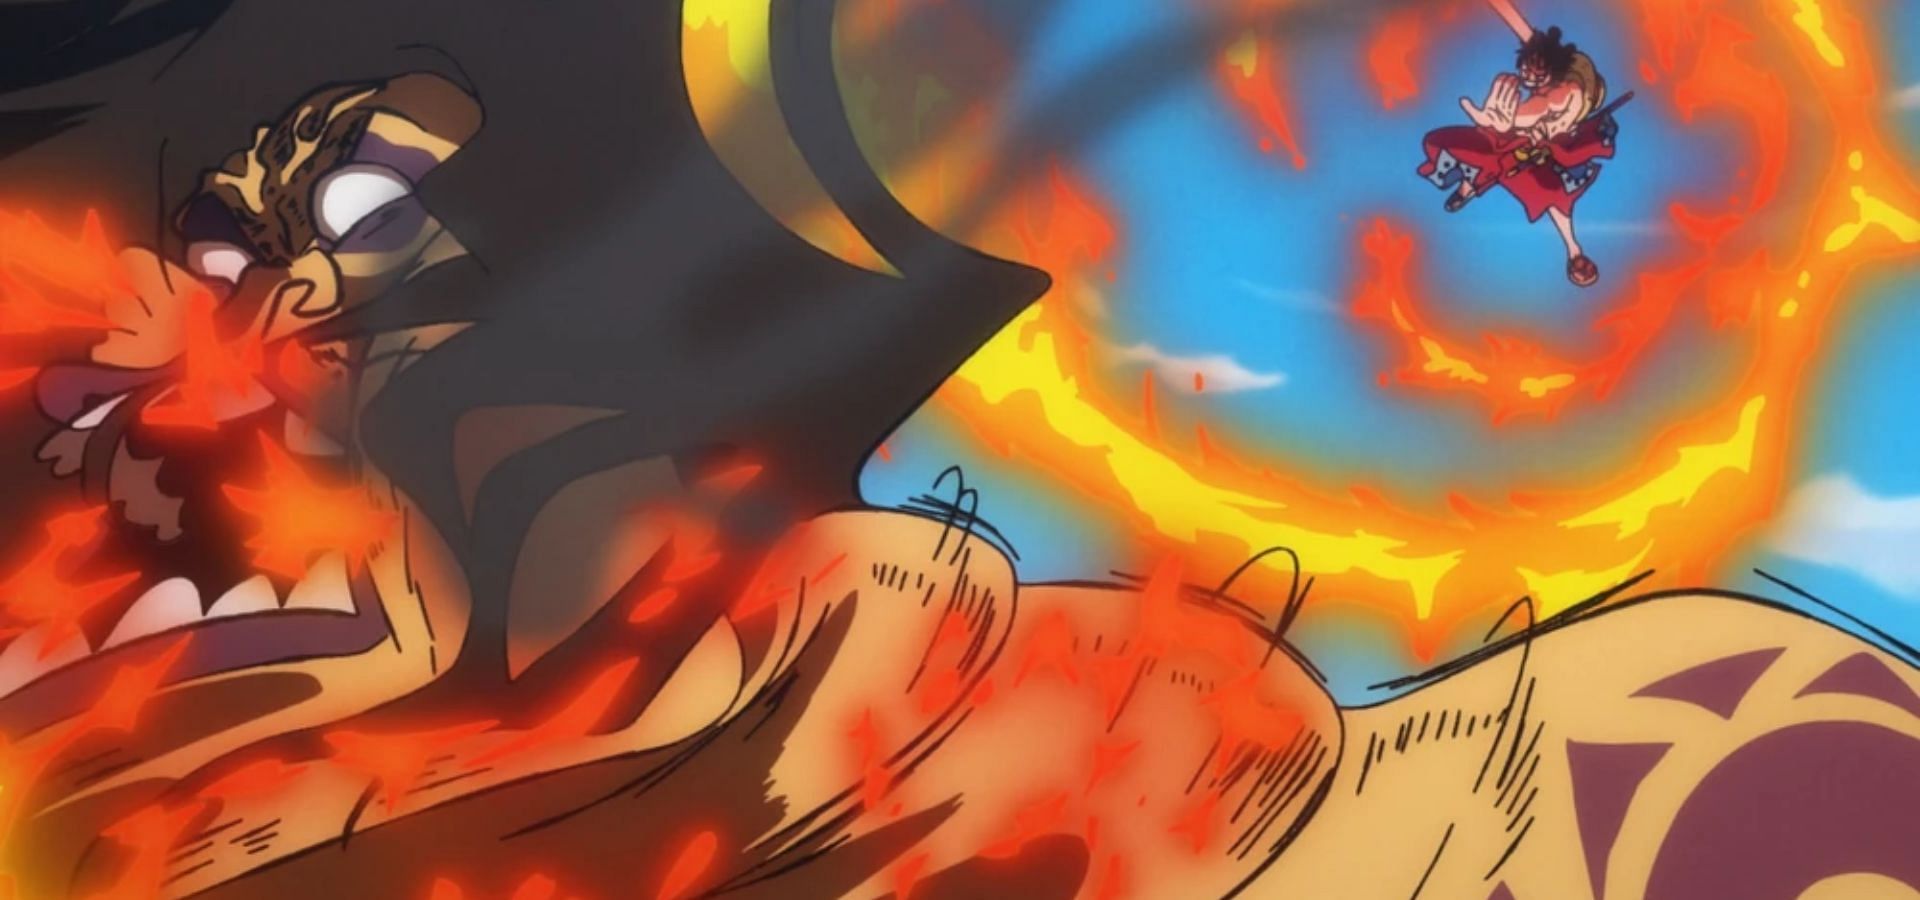 Wano, Luffy punches Holed (Image via Toei Animation)